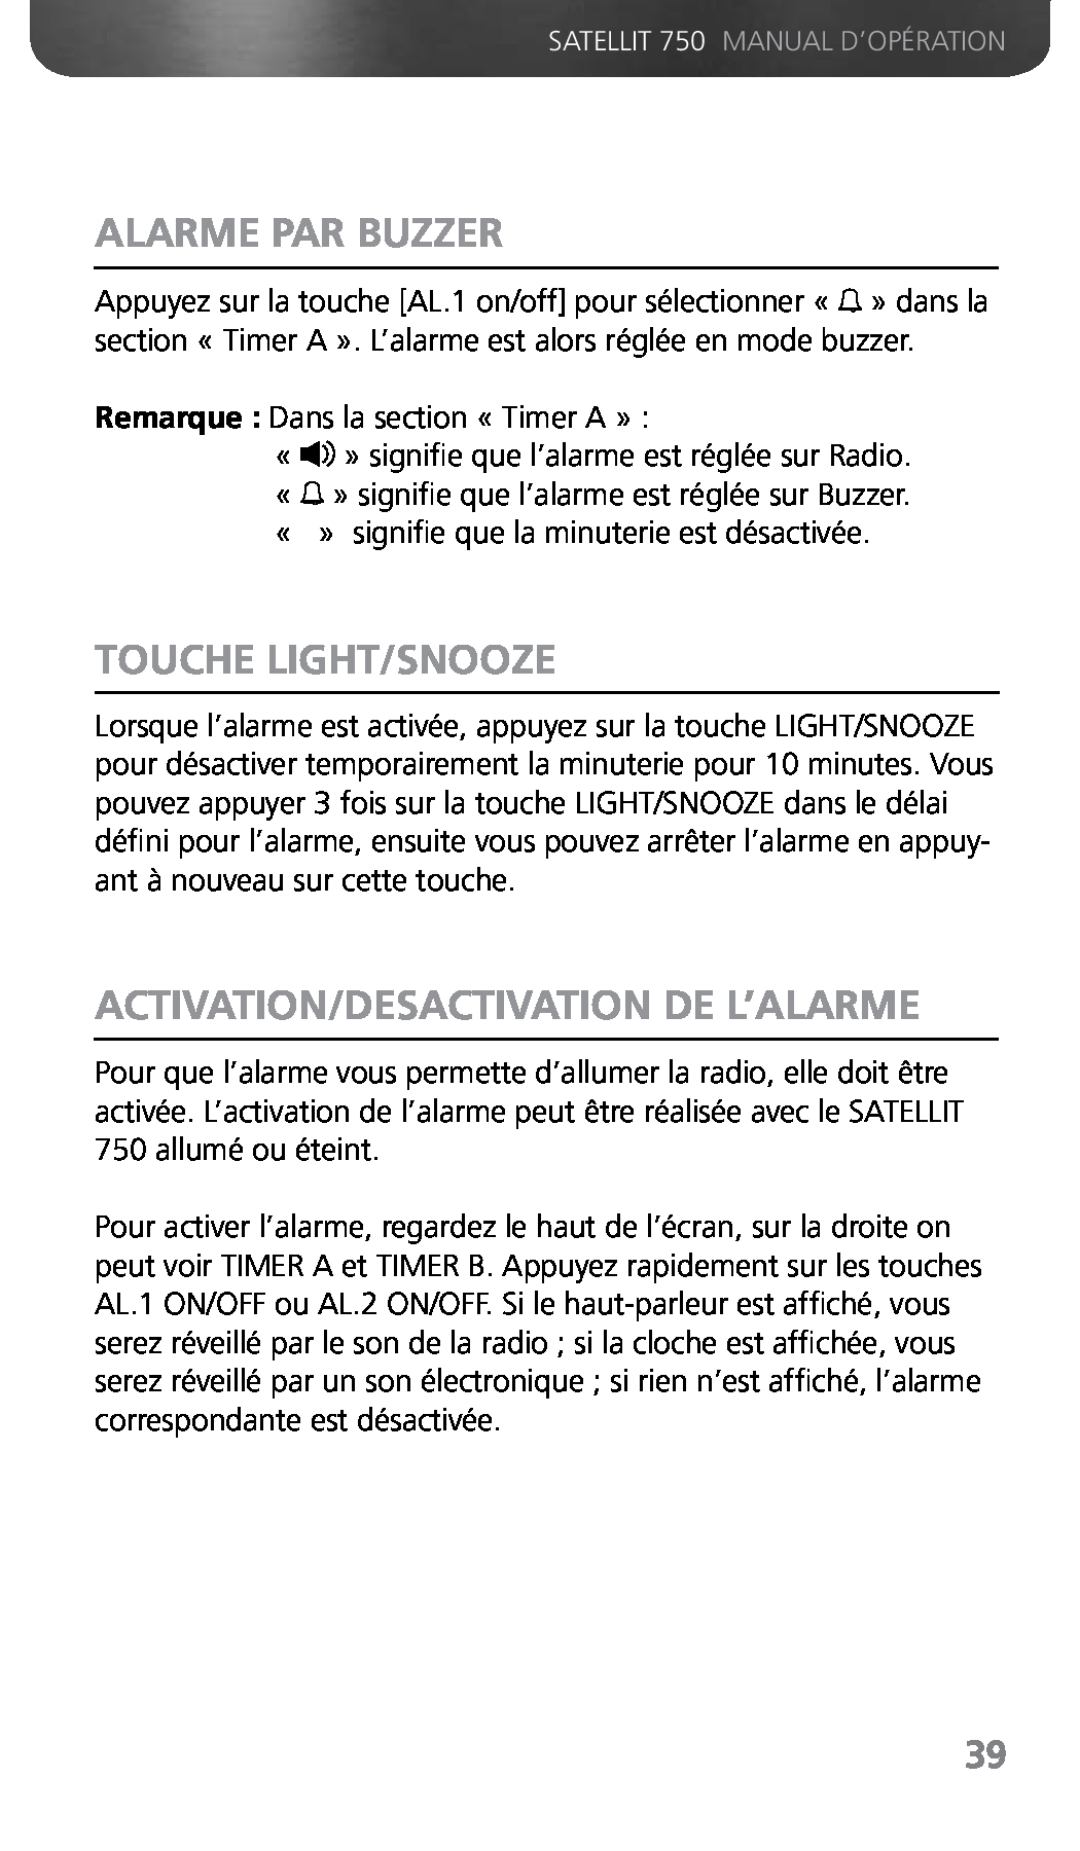 Grundig 750 owner manual Alarme Par Buzzer, Touche Light/Snooze, Activation/Desactivation De L’Alarme 